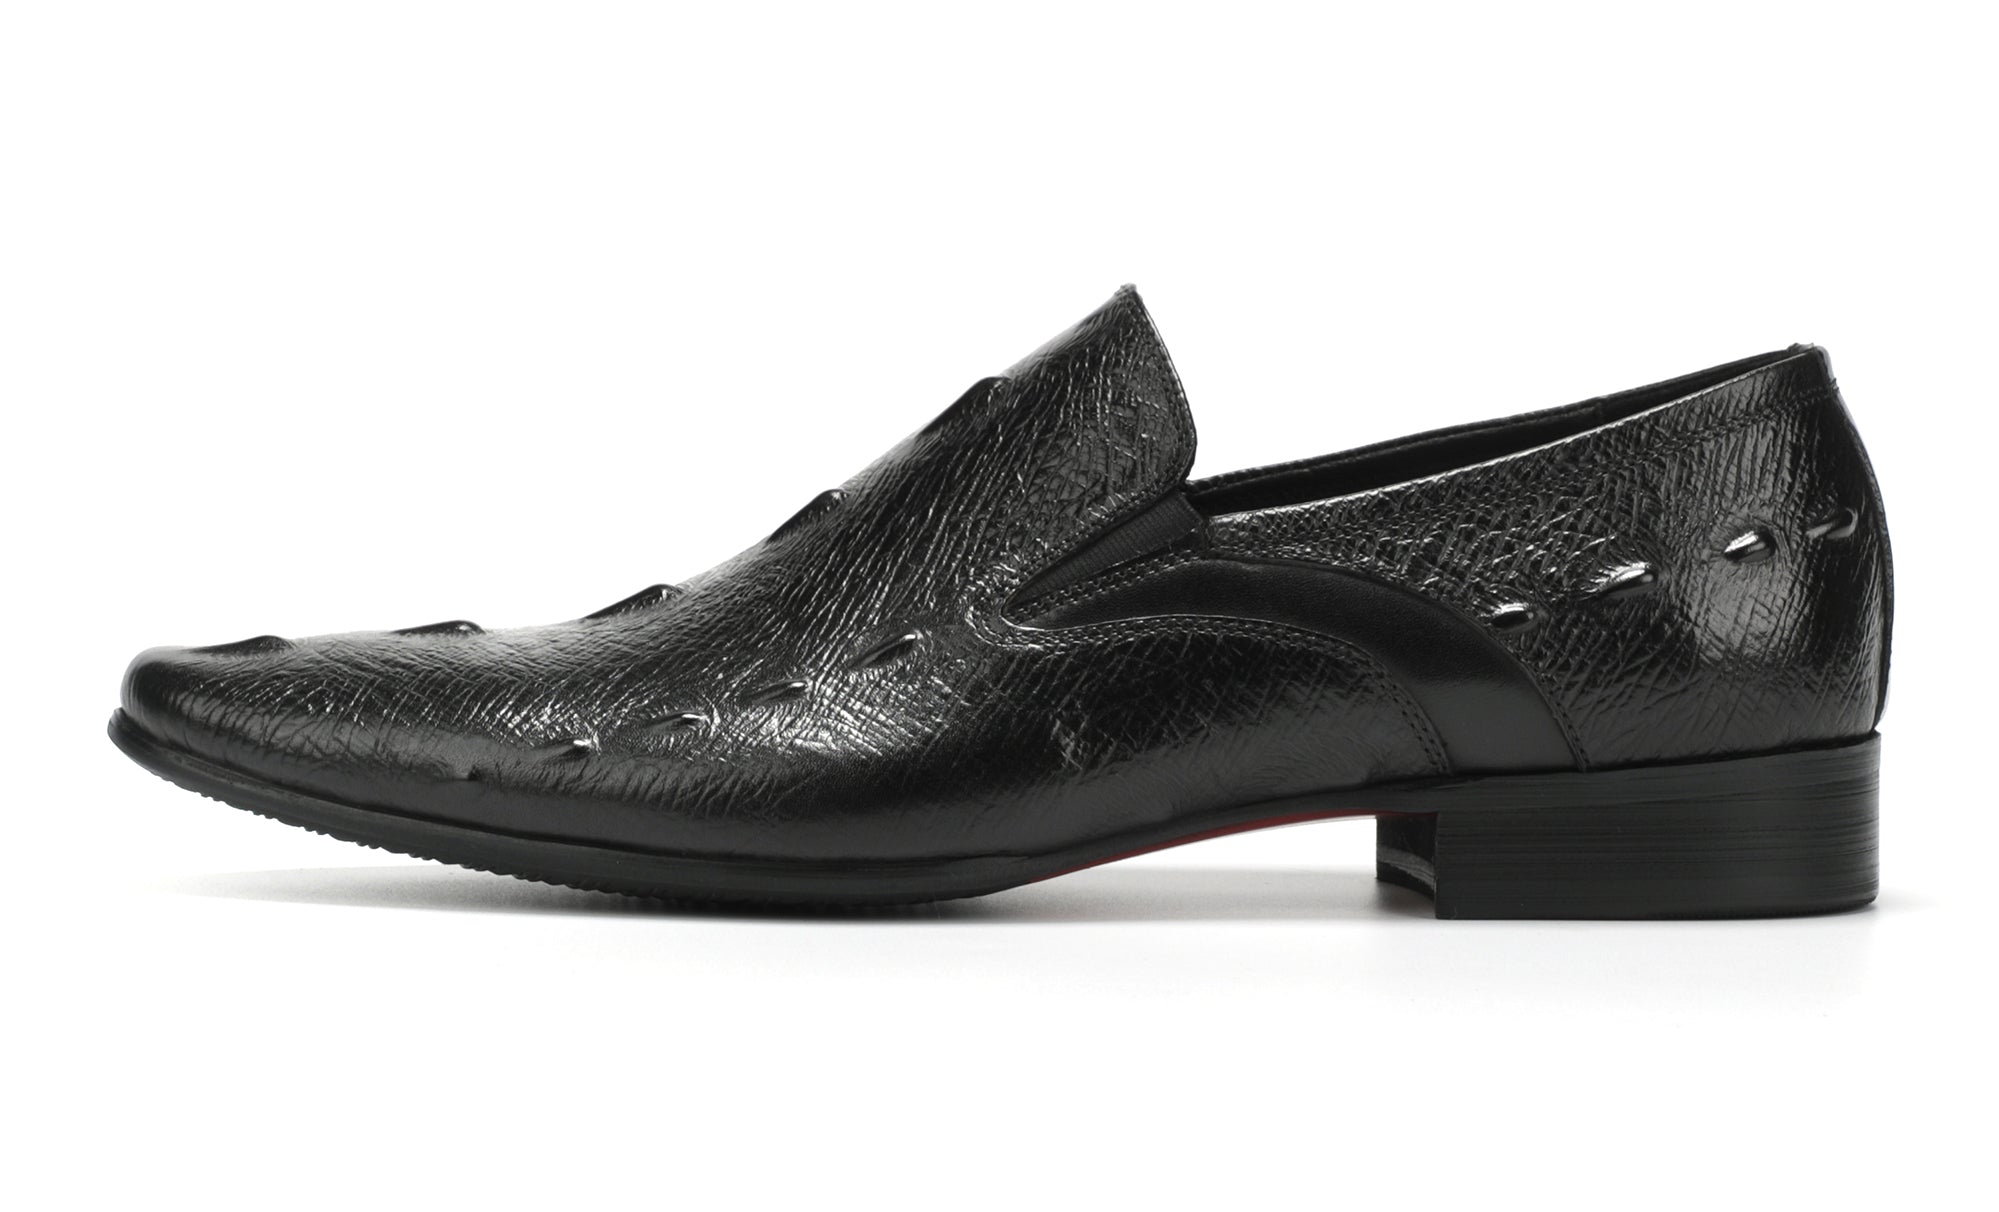 Men's Alligator Slip On Leather Loafers